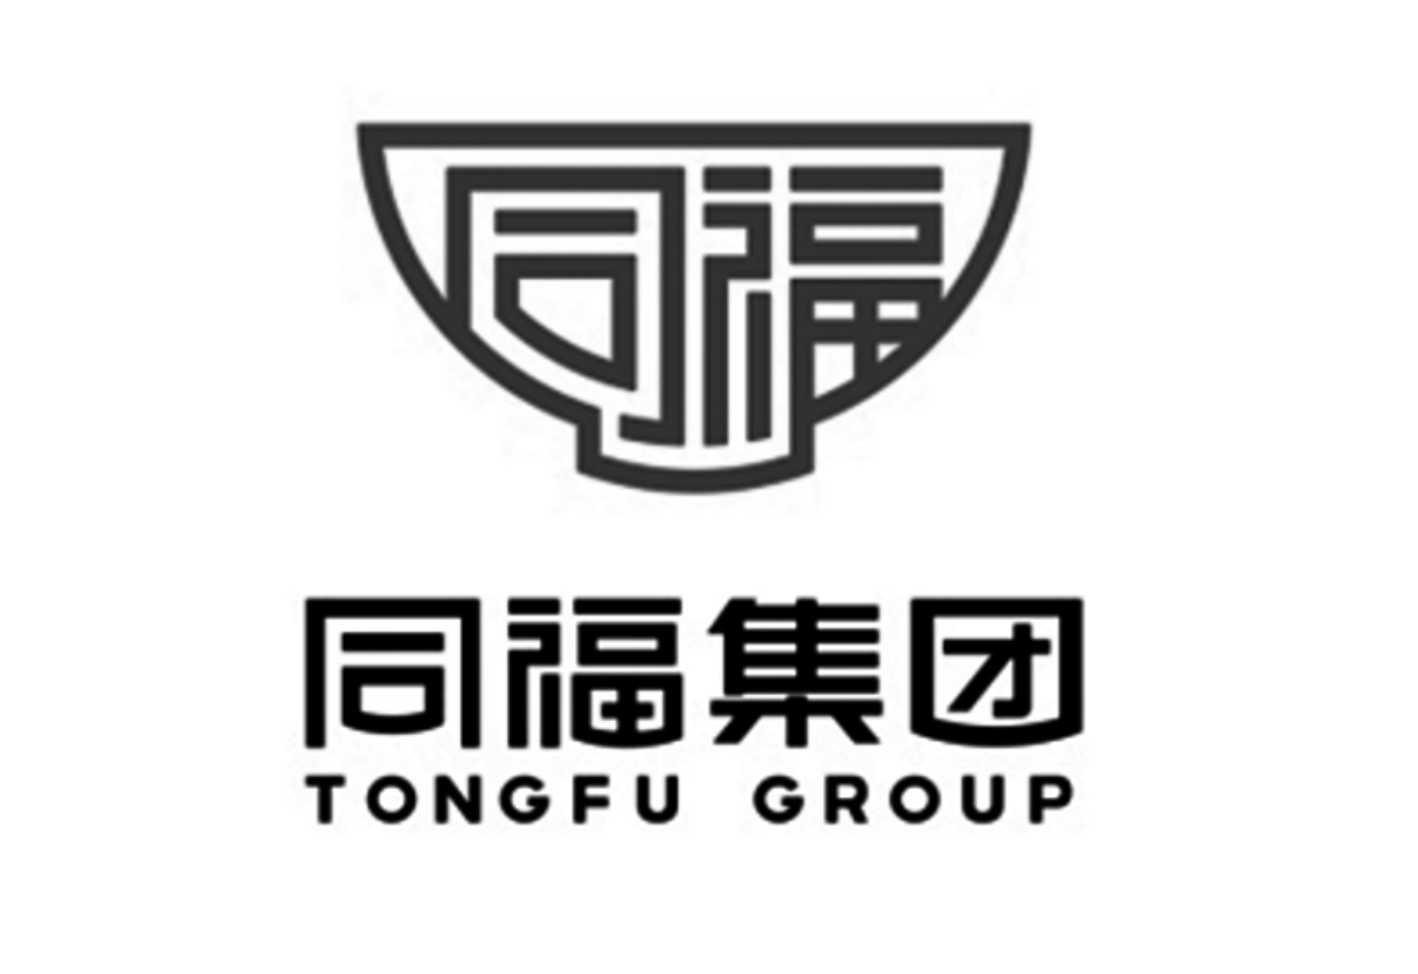 同福 同福集团 tongfu group 商标公告